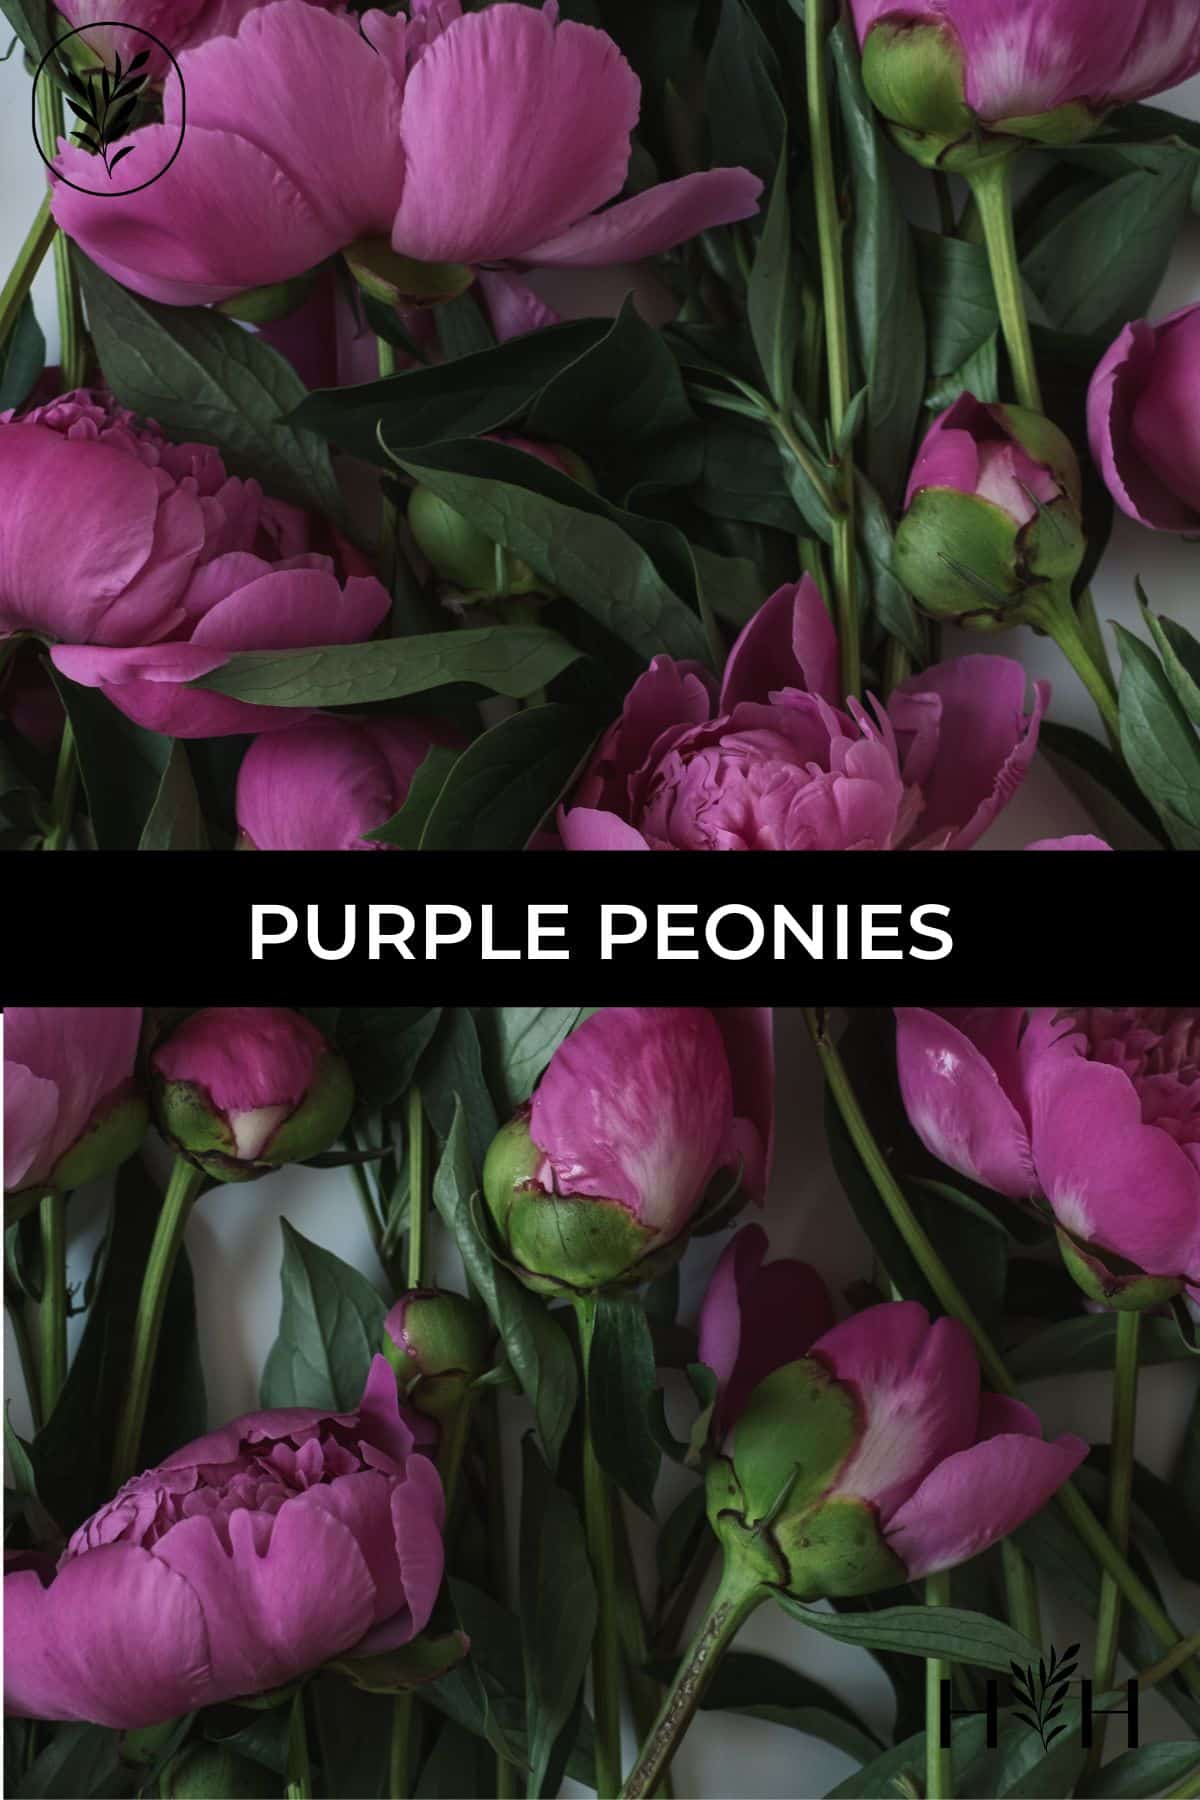 Purple peonies via @home4theharvest